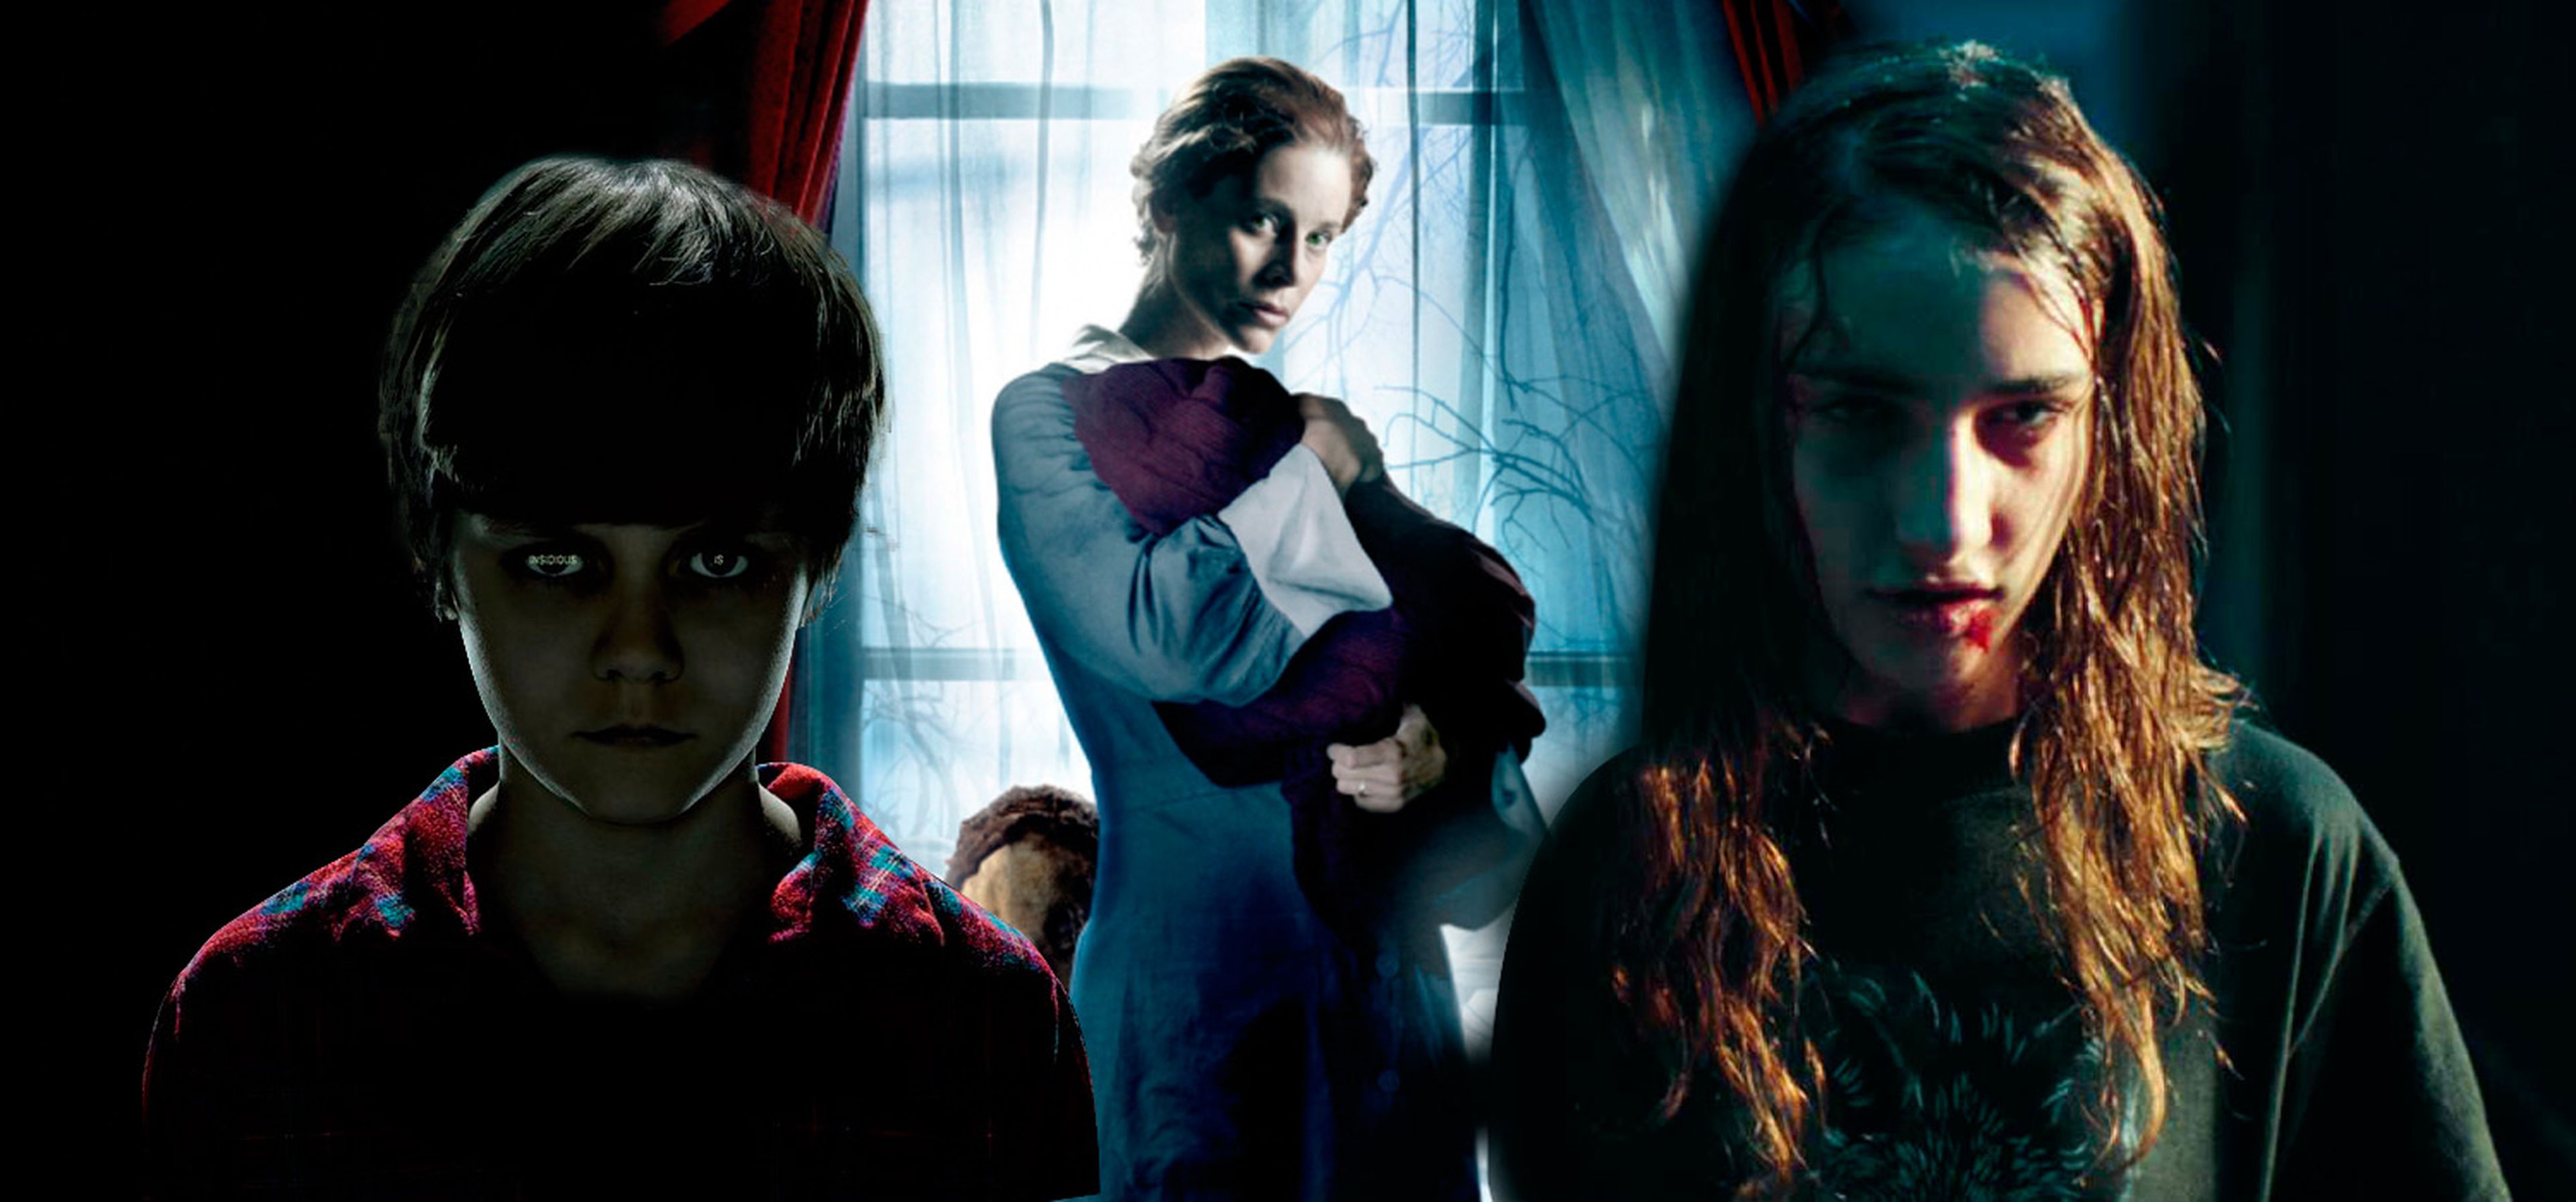 Las 10 mejores películas de terror y miedo de Netflix